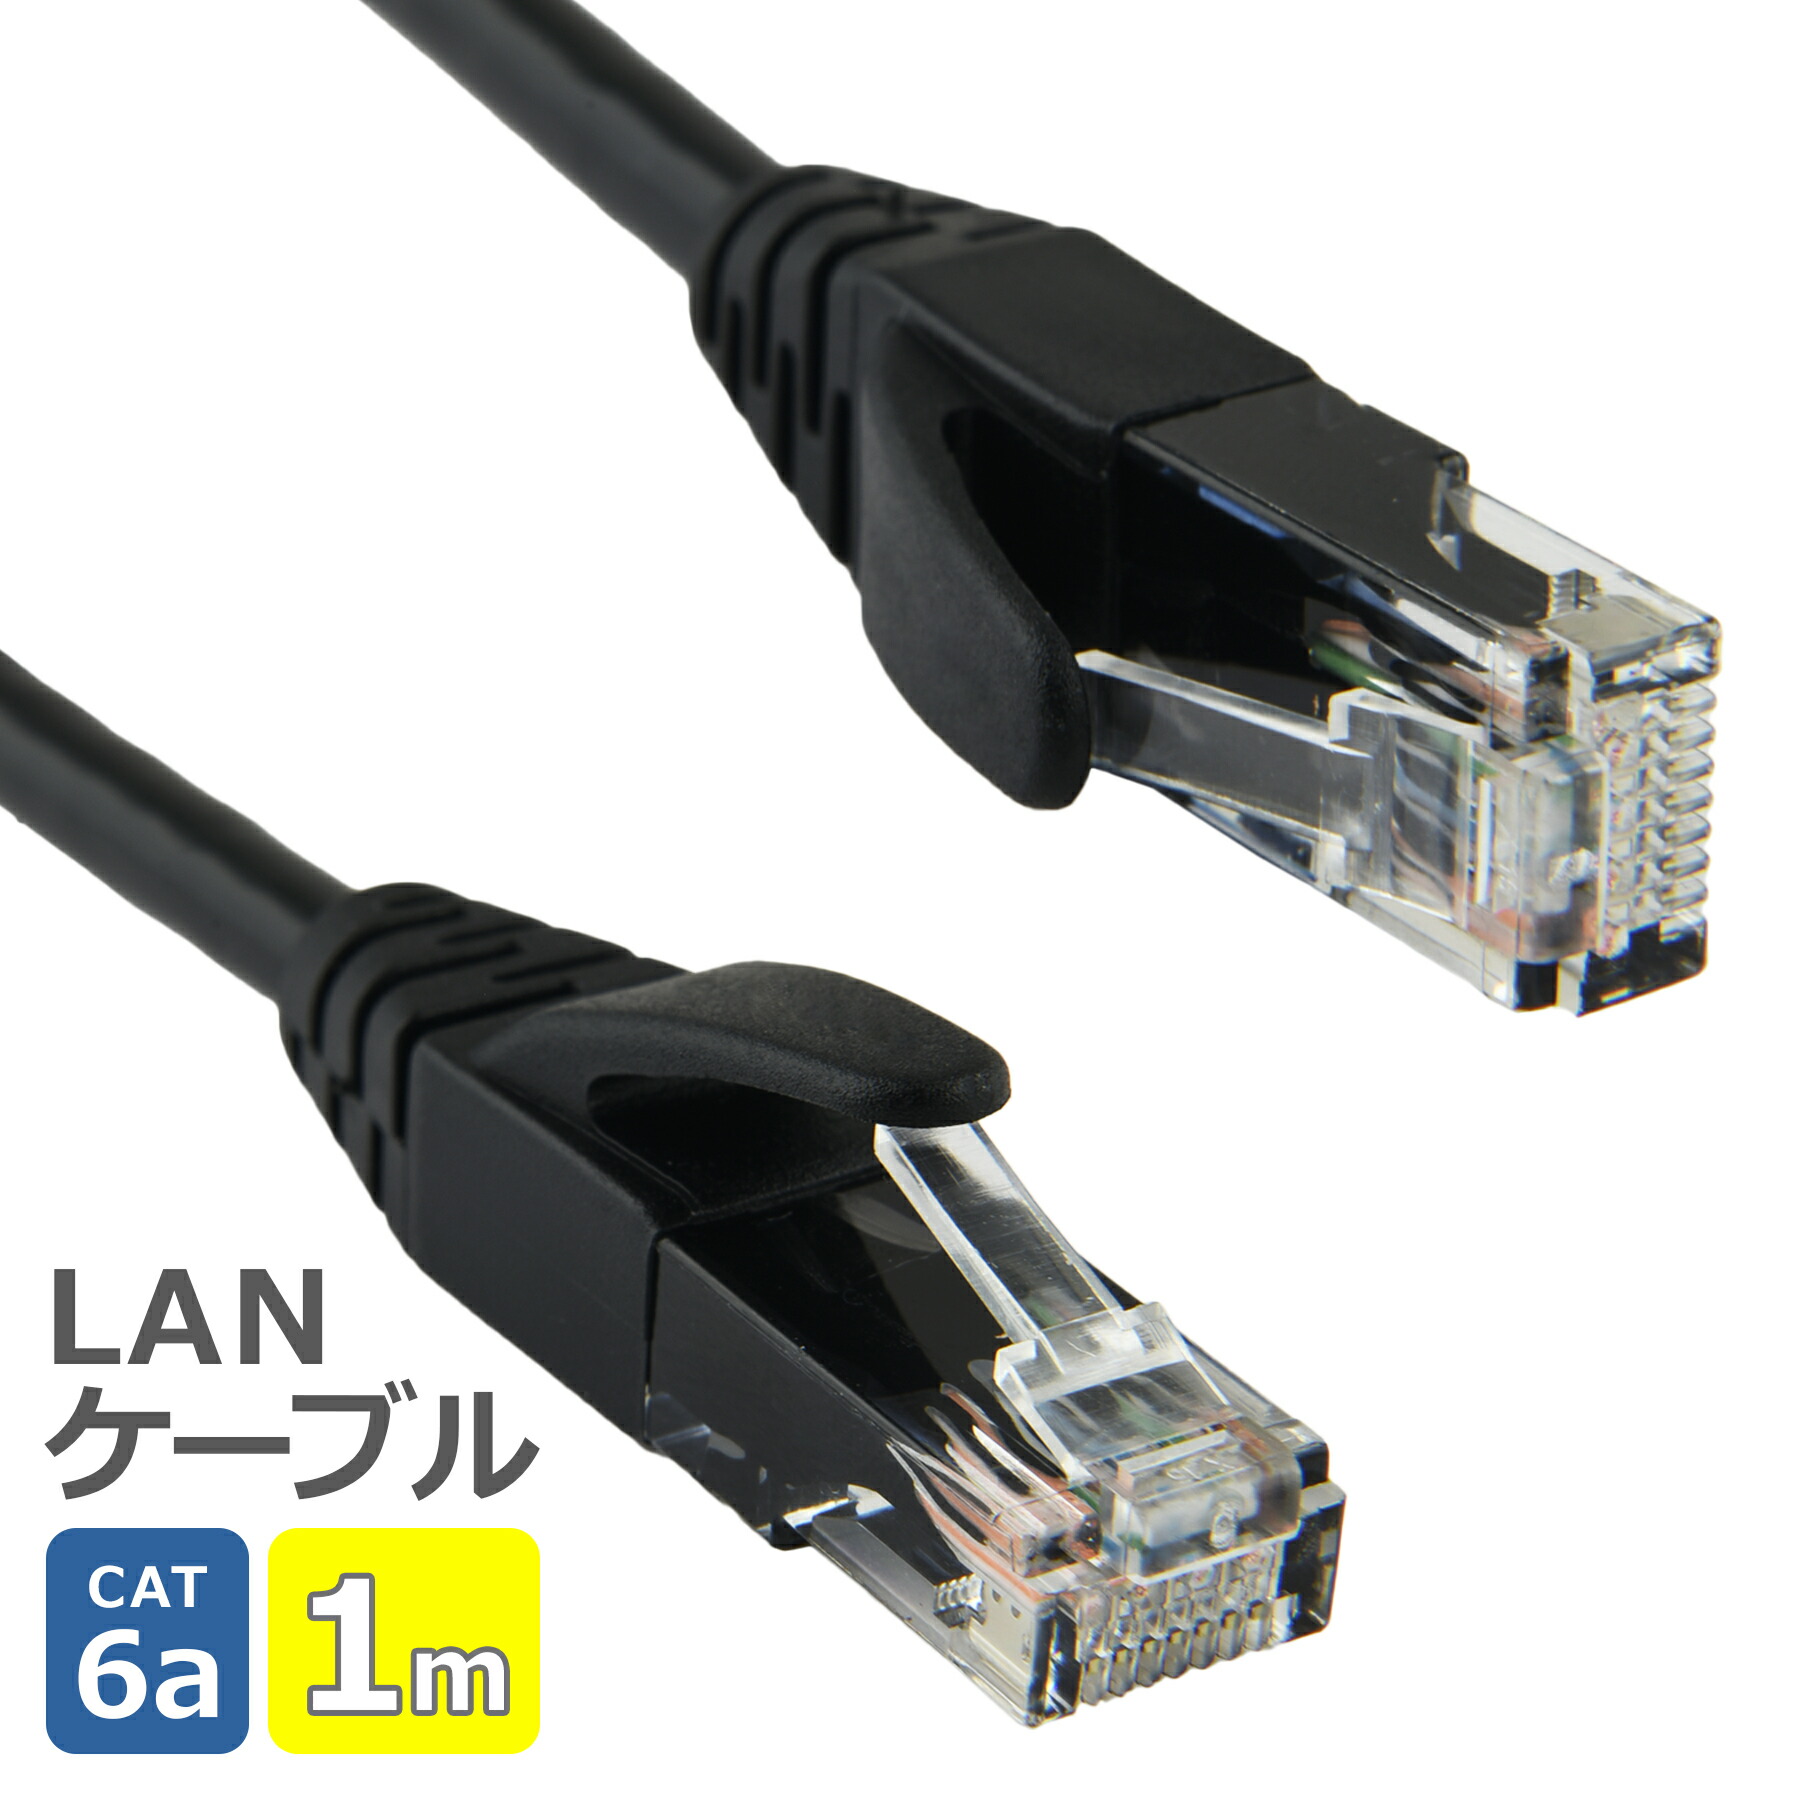 LAN кабель CAT6a 1m 10Gbps 500MHz телевизор персональный компьютер RJ45 высокая скорость ушко поломка предотвращение высокая прочность категория -6a